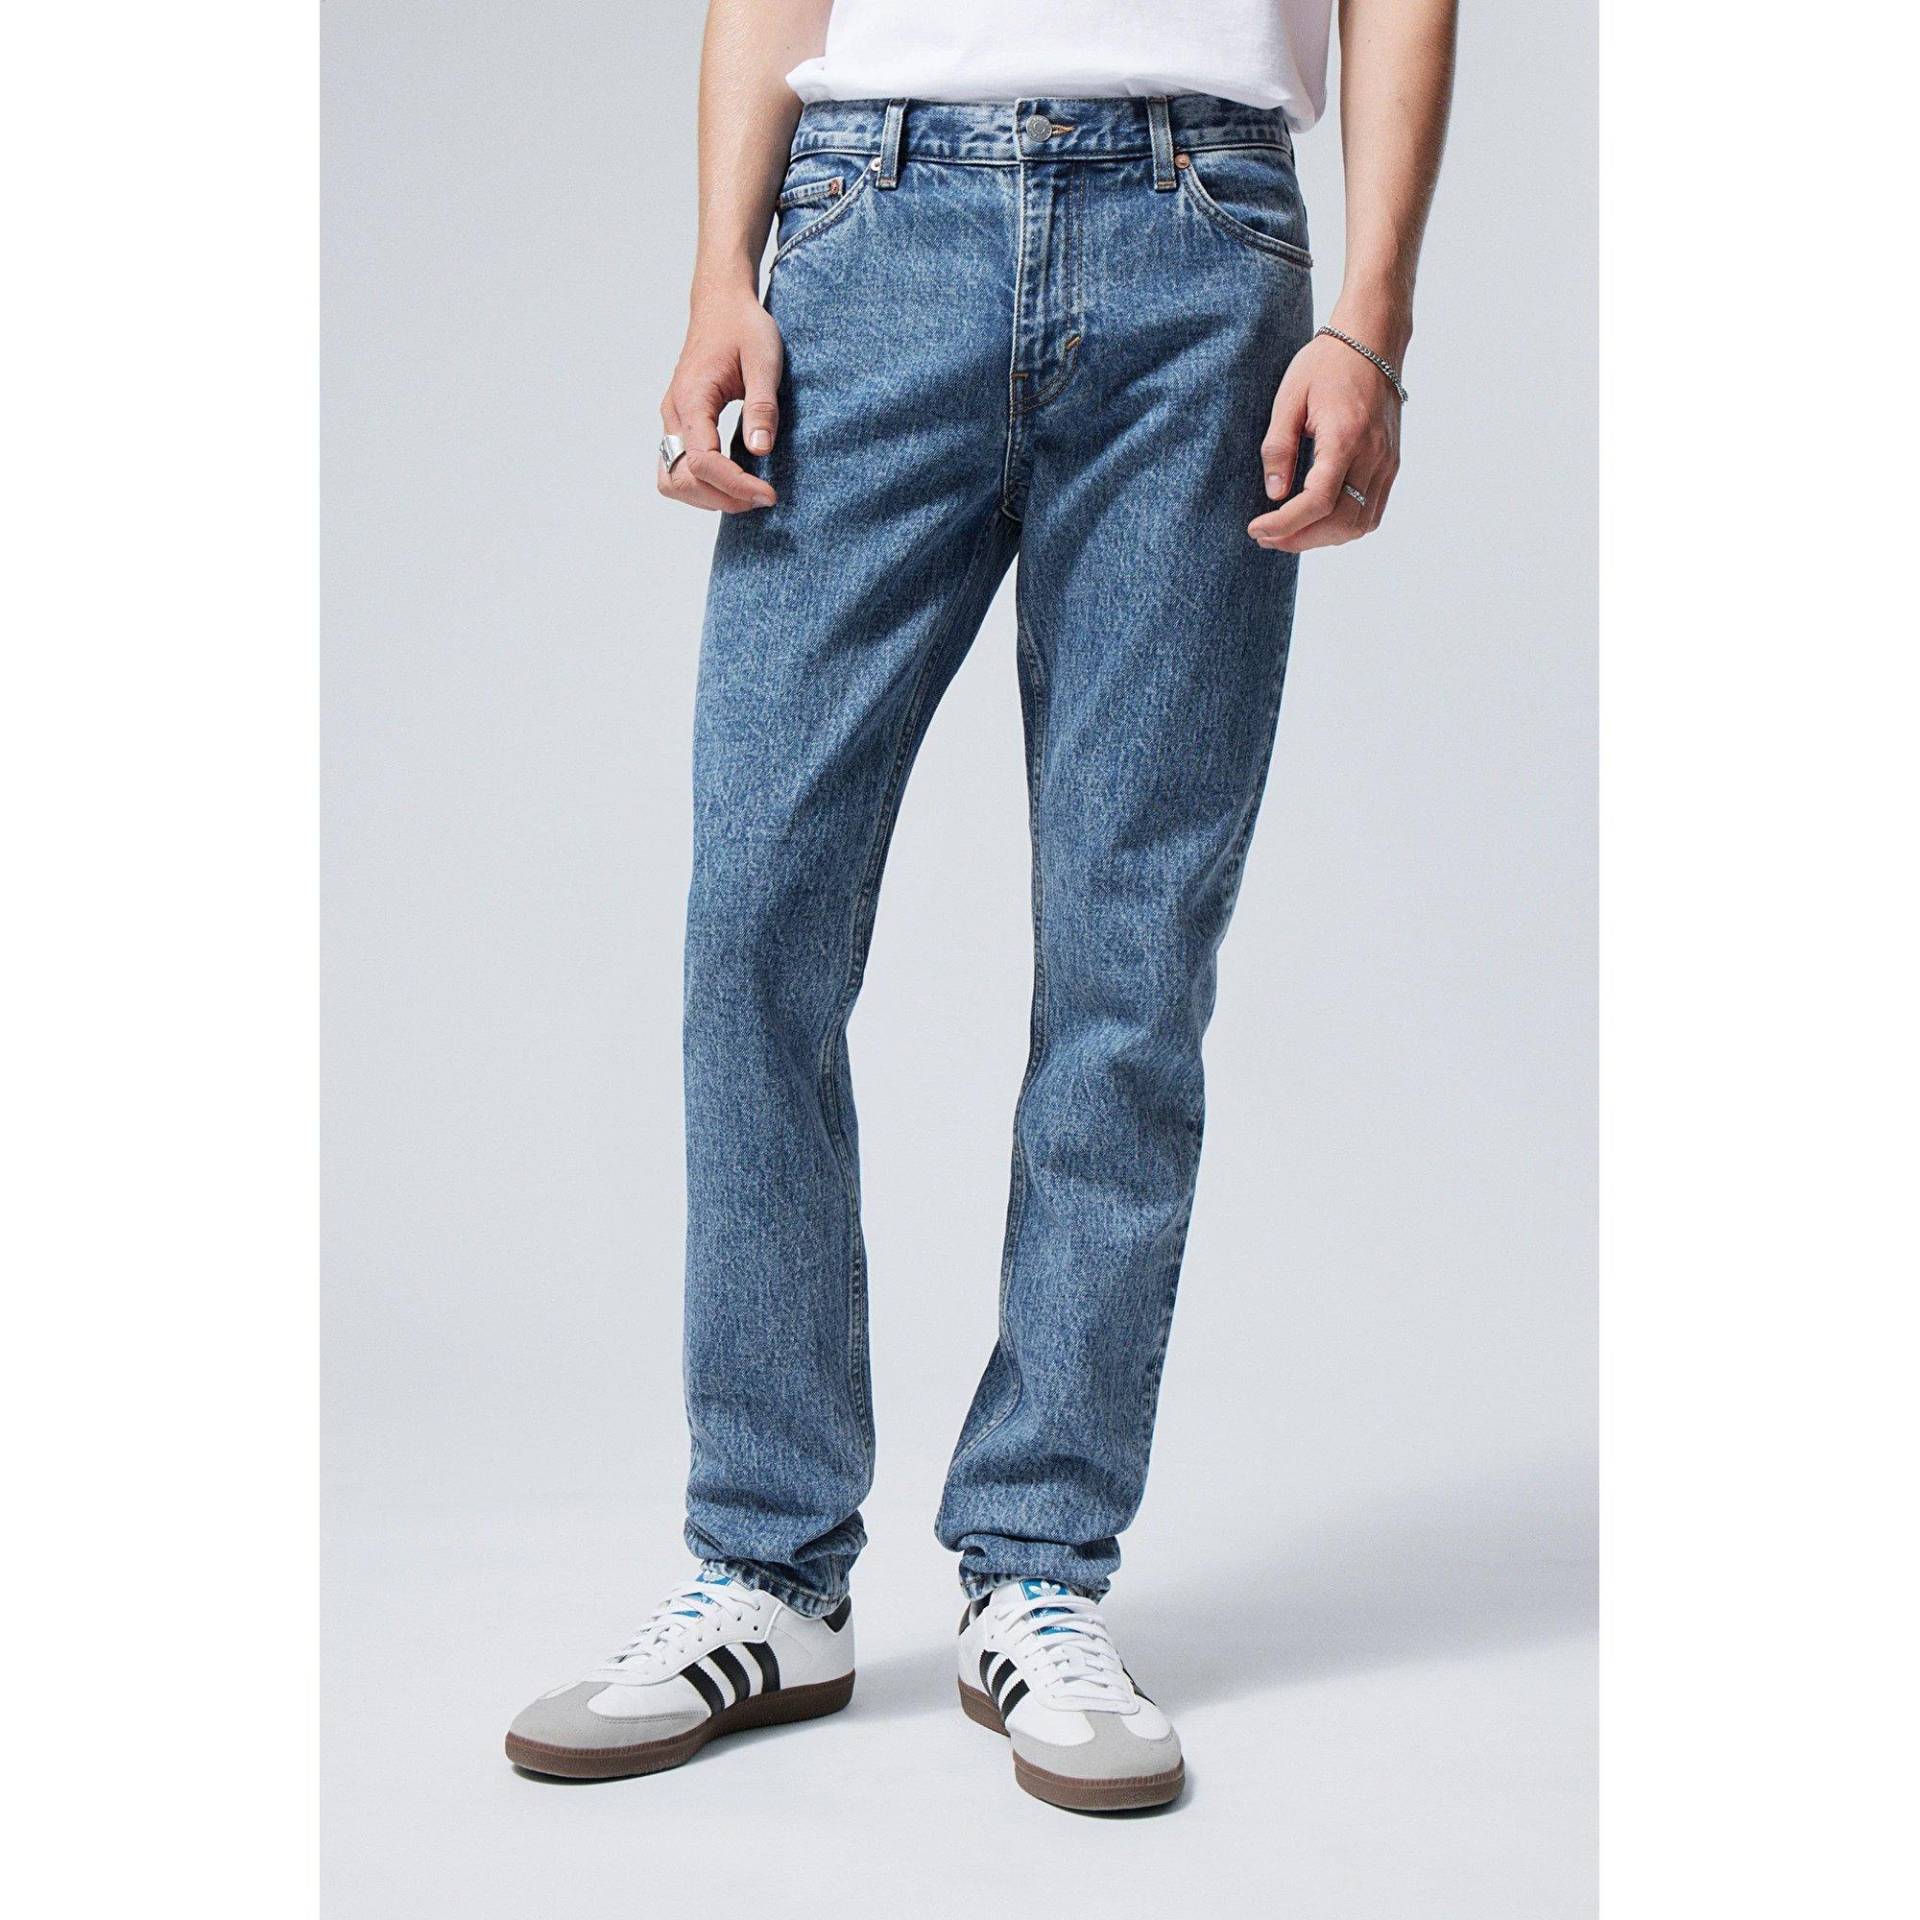 Jeans, Tapered Slim Fit Herren Blau L32/W33 von WEEKDAY